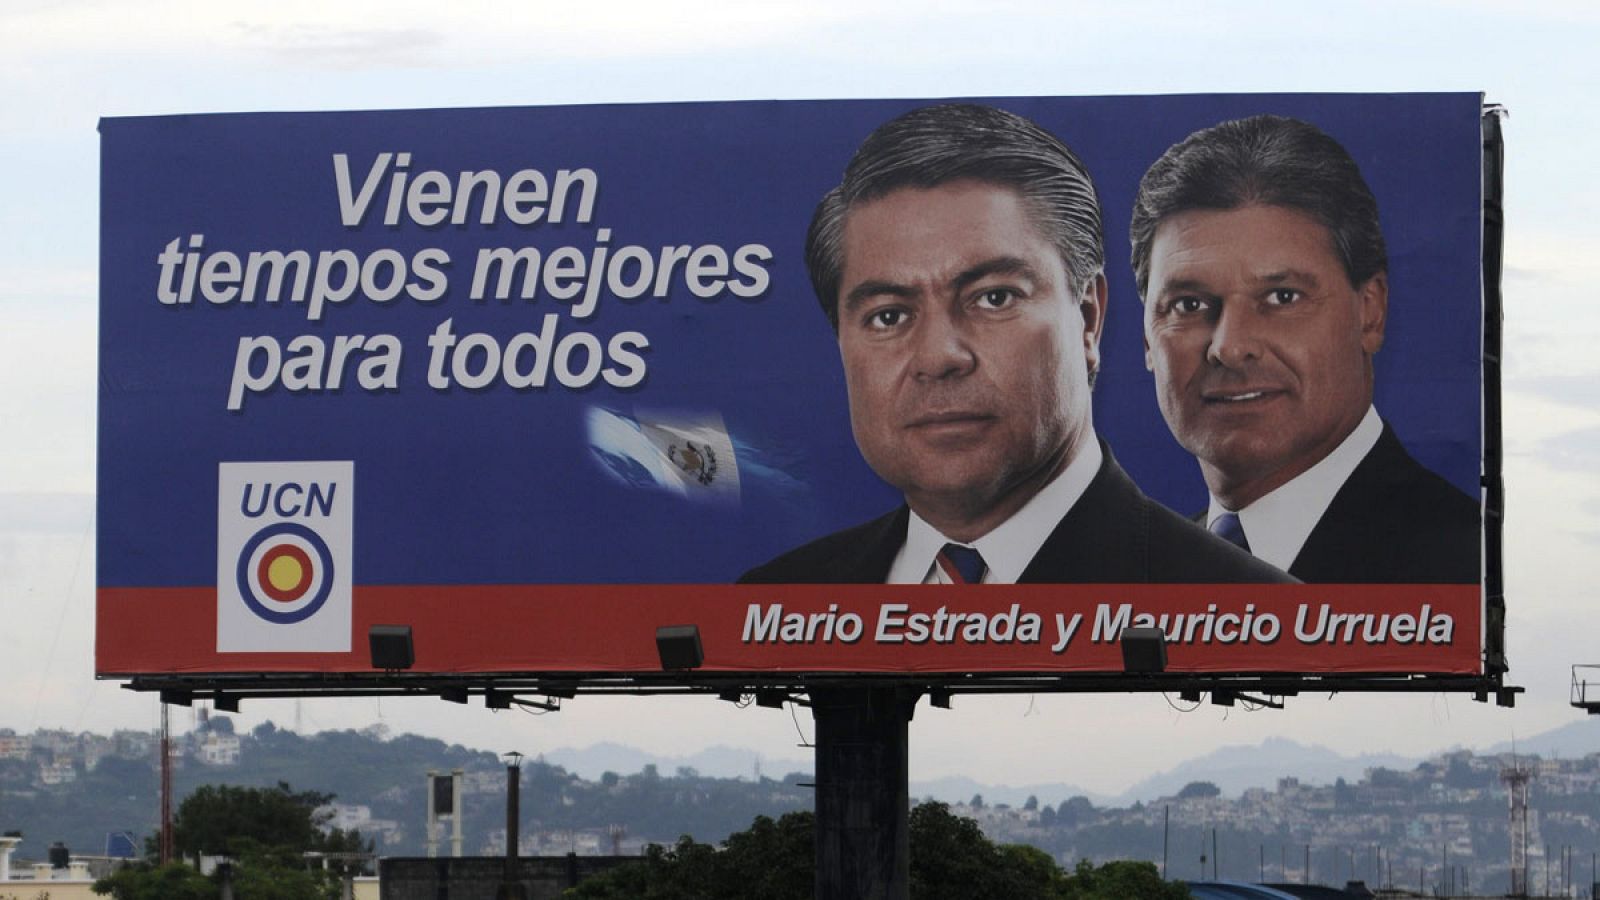 Imagen realizada en 2011 donde se muestra una valla de la campaña electoral del candidato presidencial Mario Estrada (i) del partido Unión del Cambio Nacional (UCN) en Guatemala.